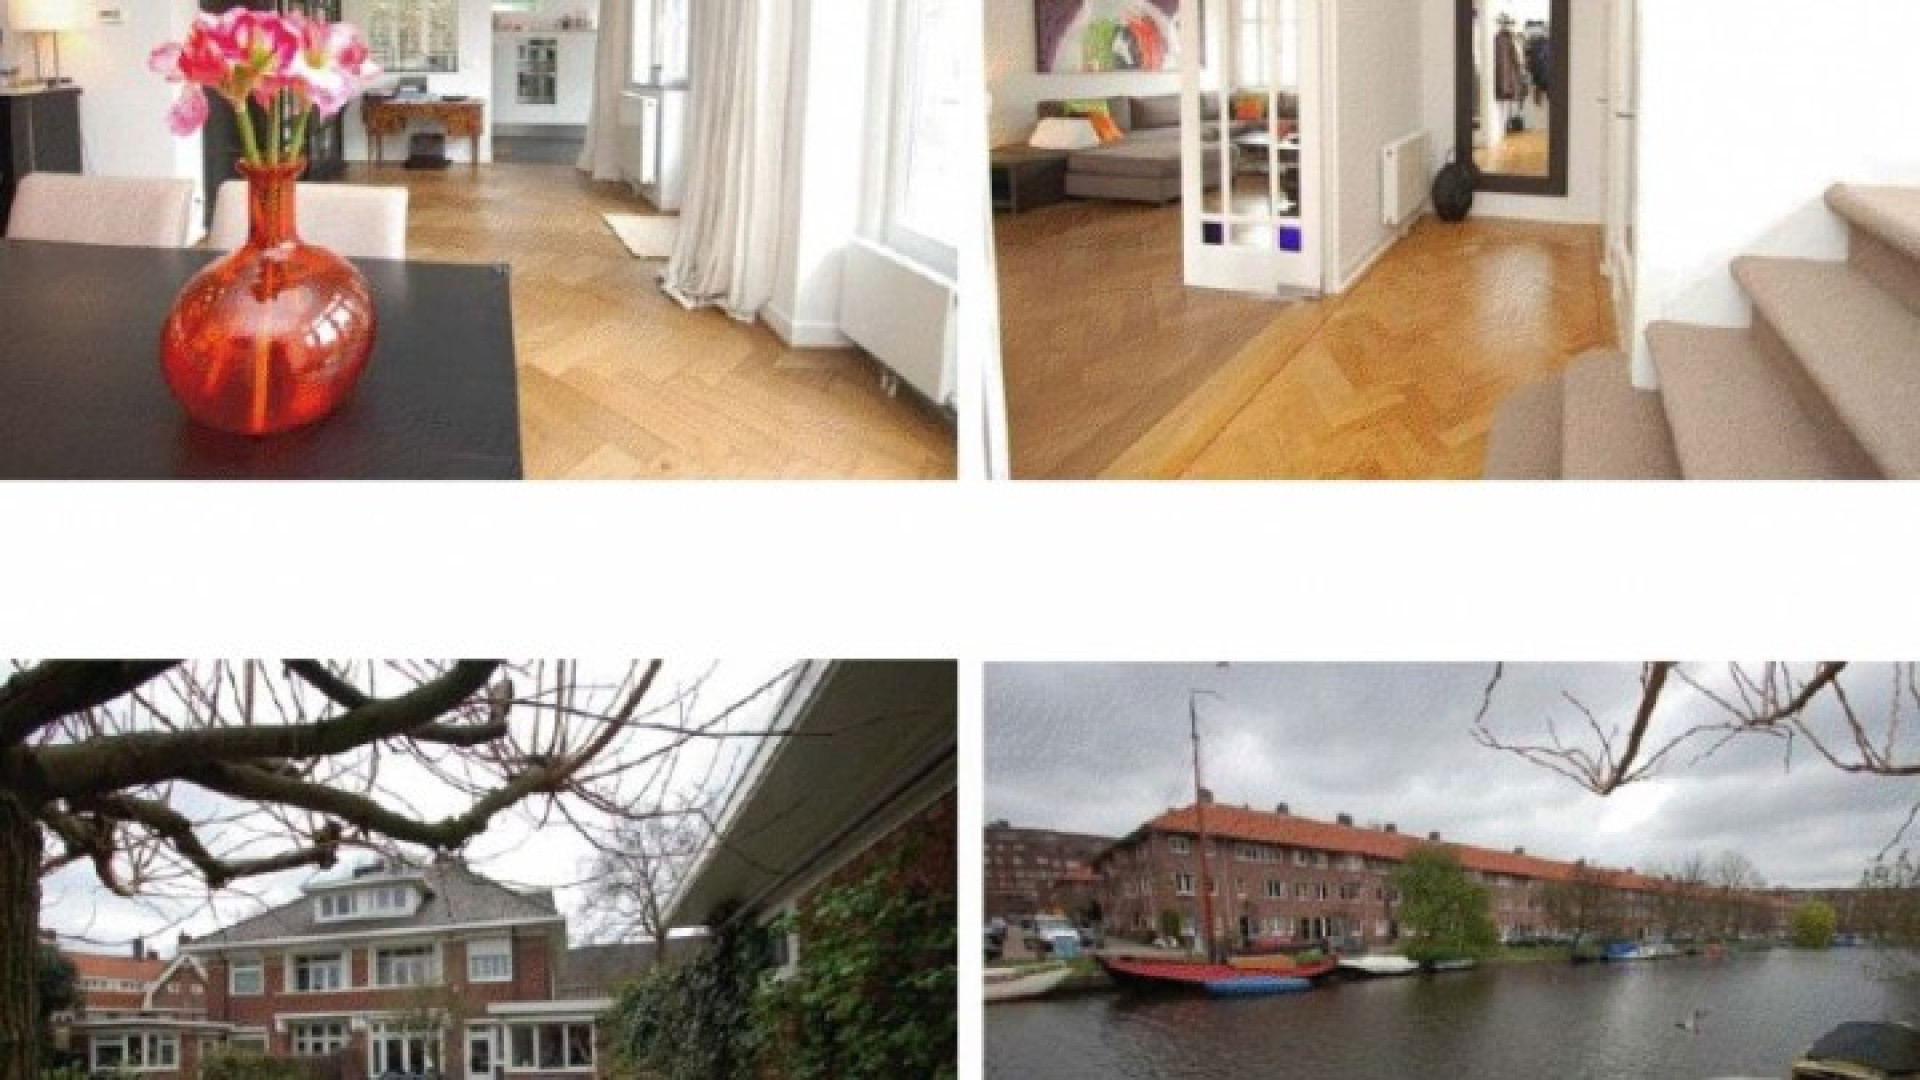 Huis Doutzen Kroes in Amsterdam Zuid te huur gezet. Zie foto's 6